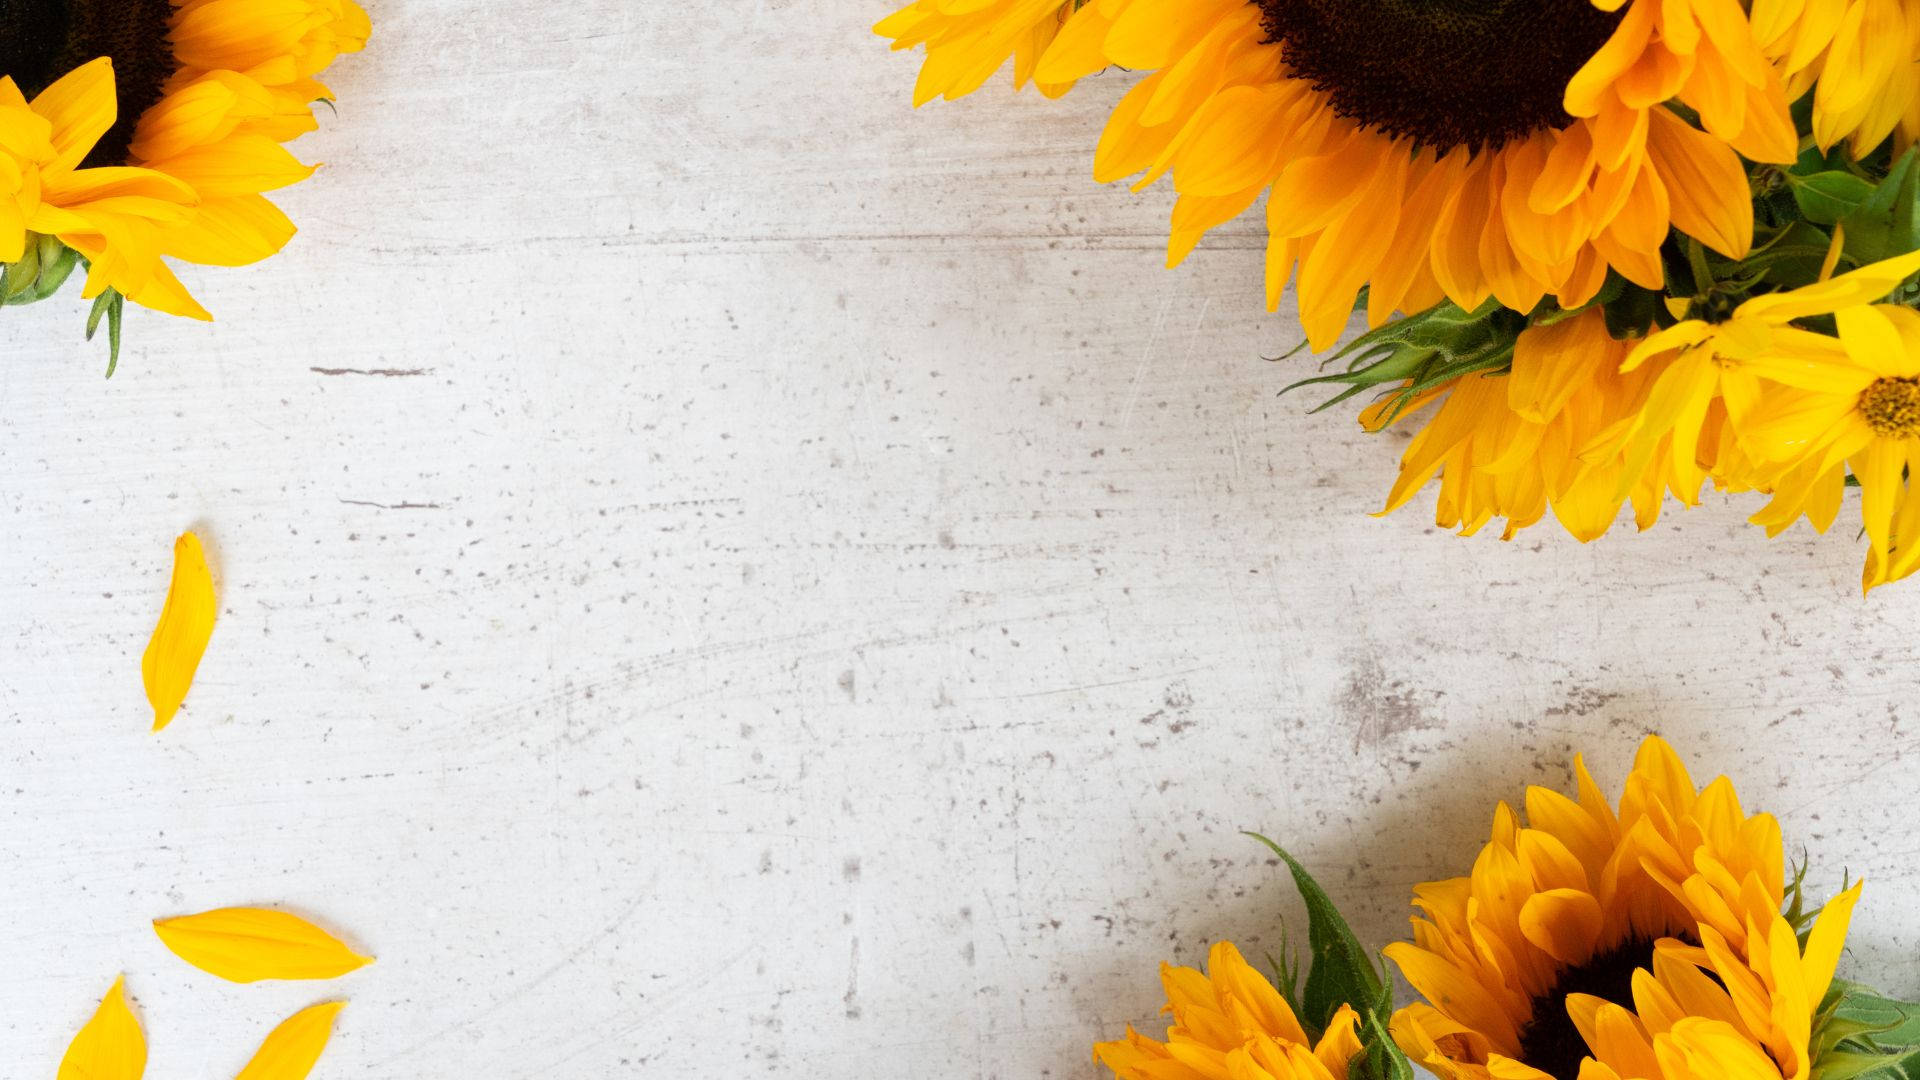 Fühledie Helligkeit Des Lebens Mit Diesem Sonnenblumen-desktop-hintergrund. Wallpaper